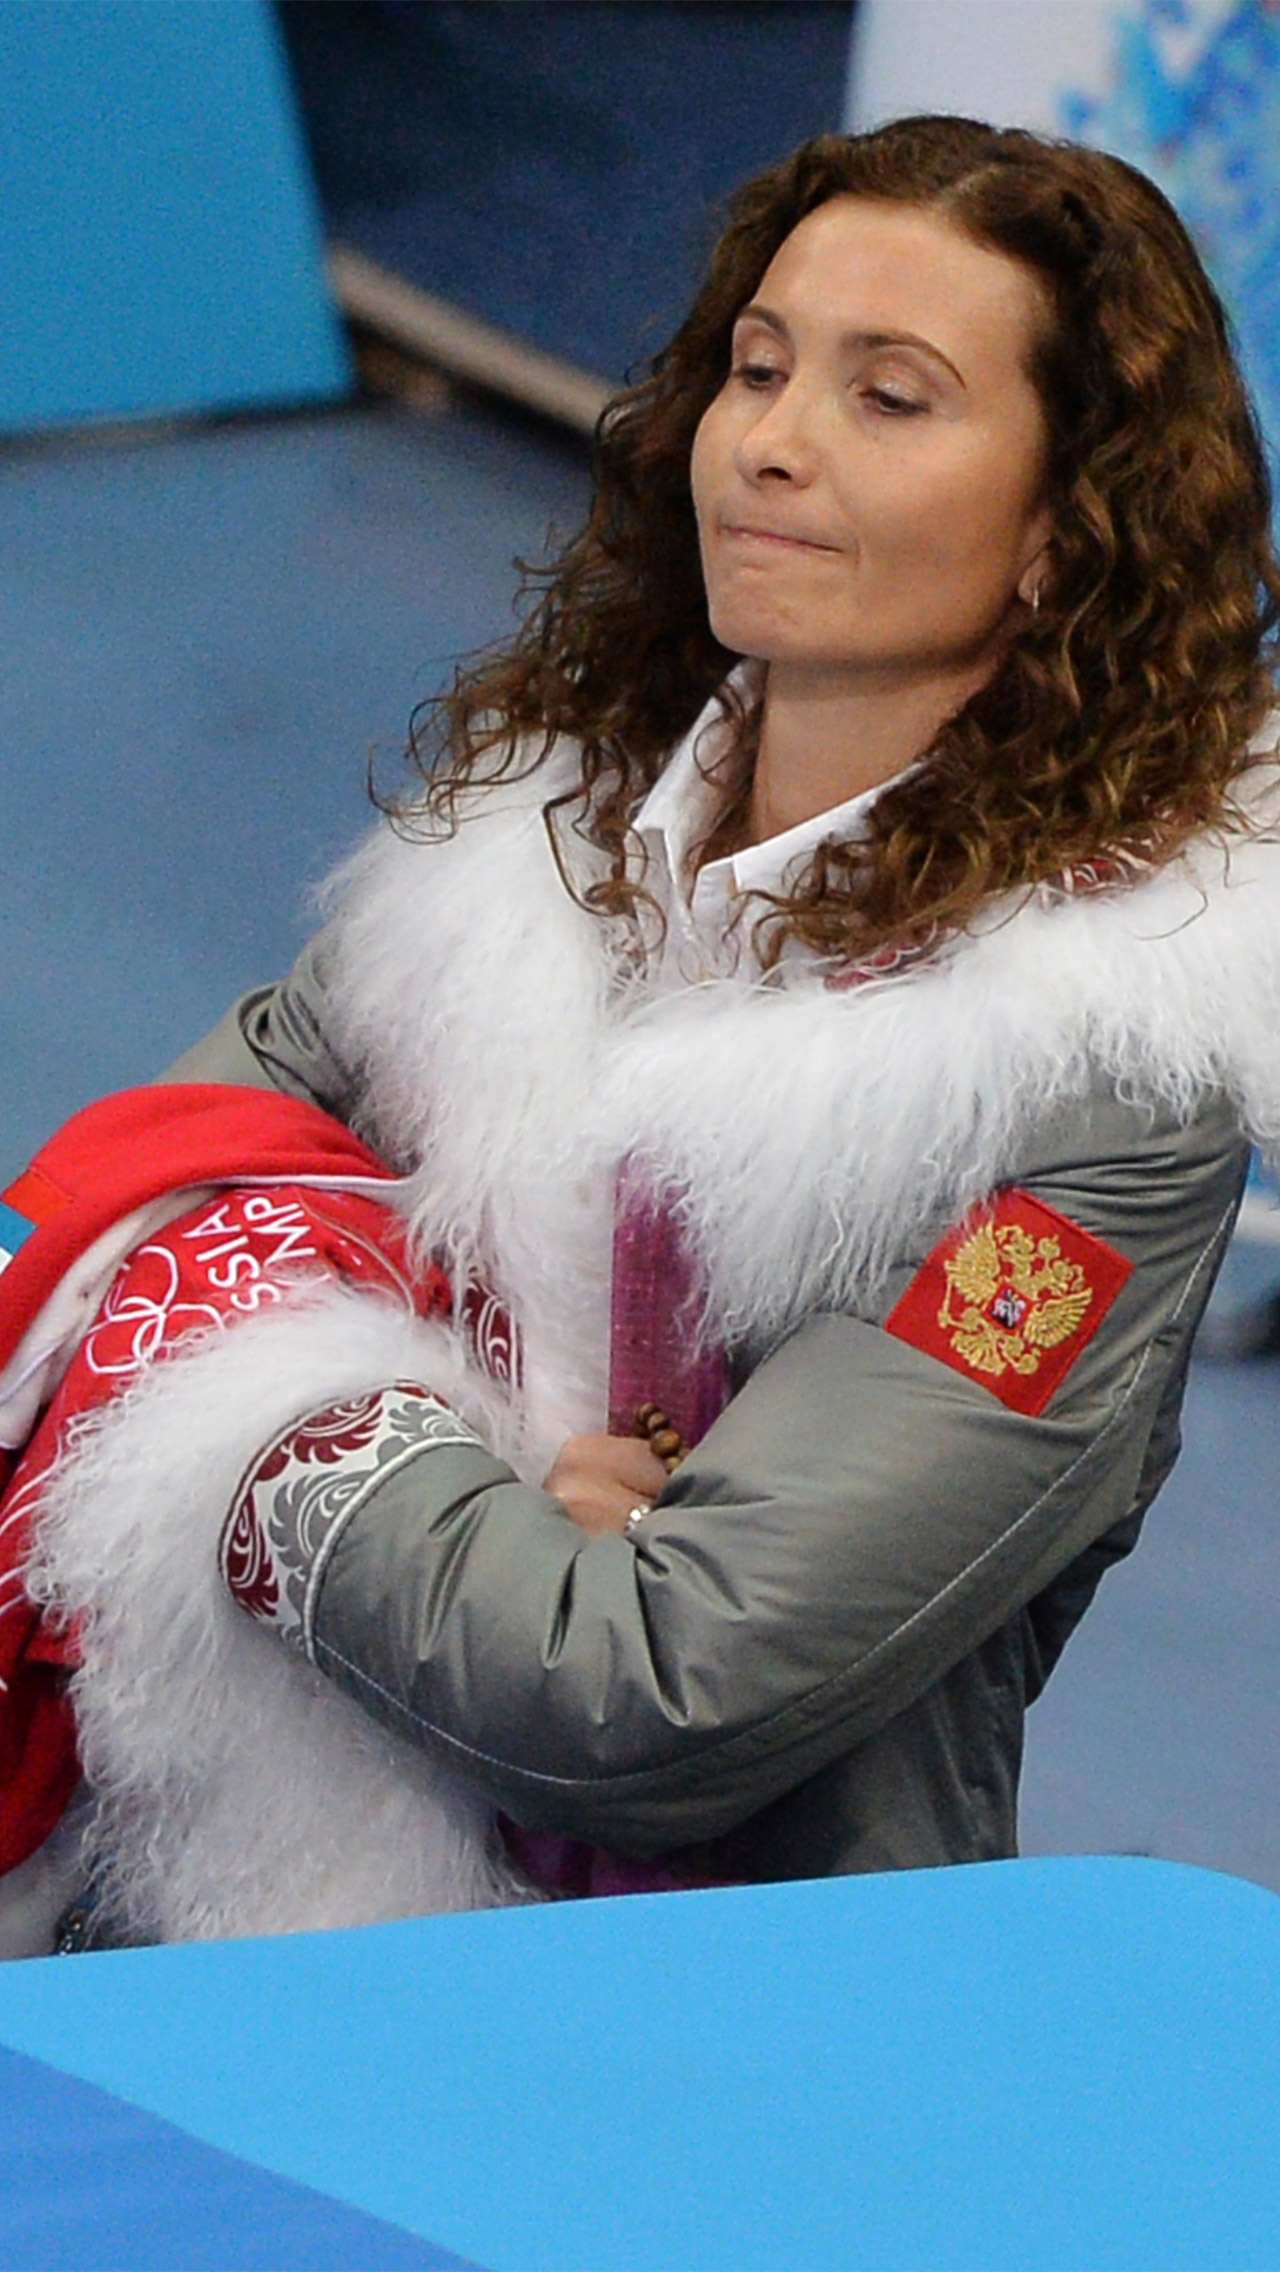 Популярность пришла к Тутберидзе во время работы с Юлией Липницкой. Тогда Этери часто появлялась на публике в спортивных костюмах и официальной экипировке сборной России.